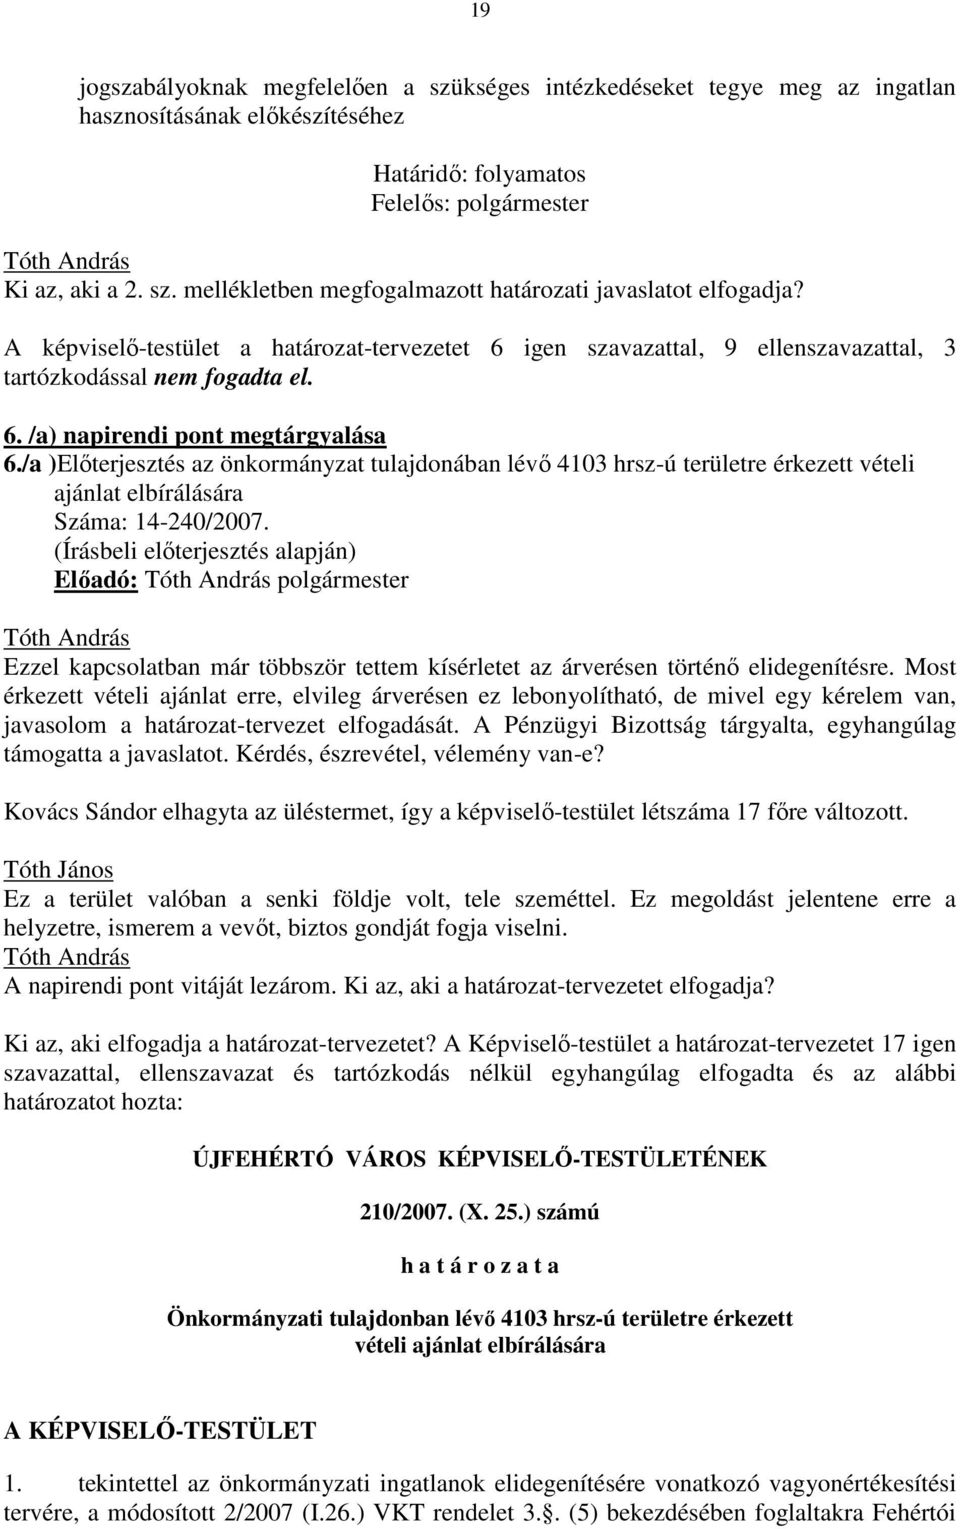 /a )Elıterjesztés az önkormányzat tulajdonában lévı 4103 hrsz-ú területre érkezett vételi ajánlat elbírálására Száma: 14-240/2007.